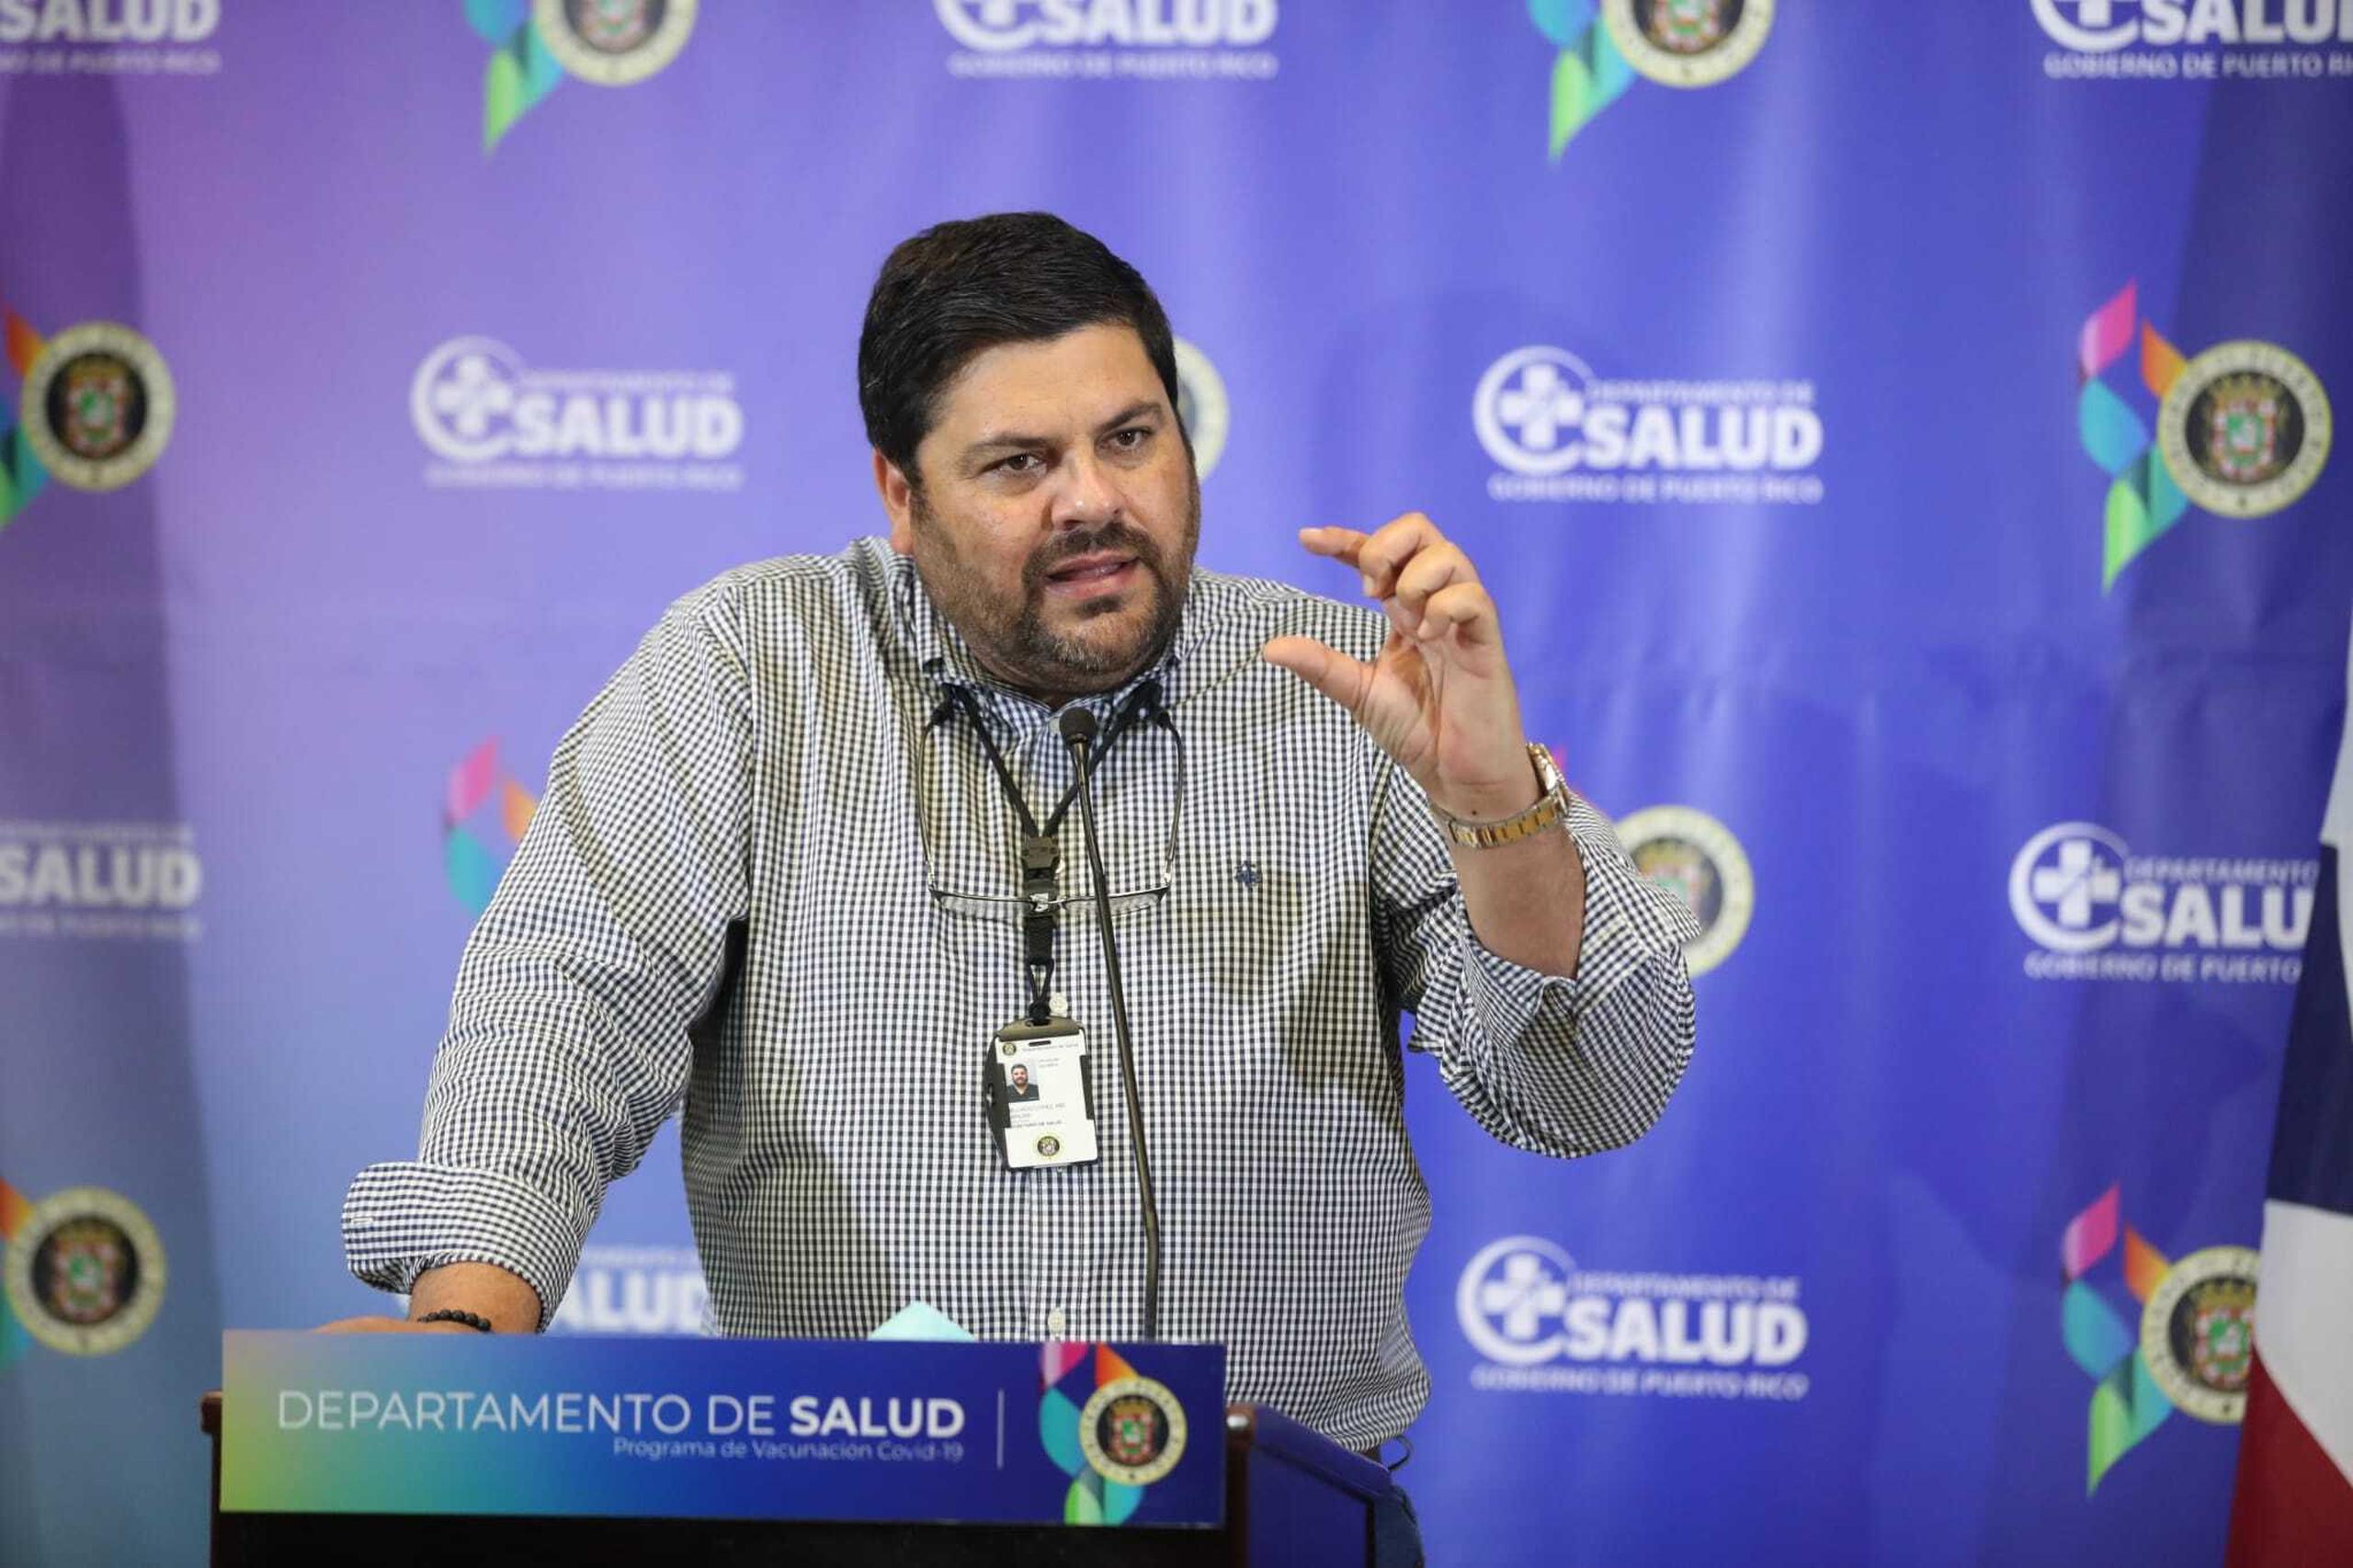 El secretario de Salud, Carlos Mellado, participó de la vacunación masiva en el Coliseo de Puerto Rico.